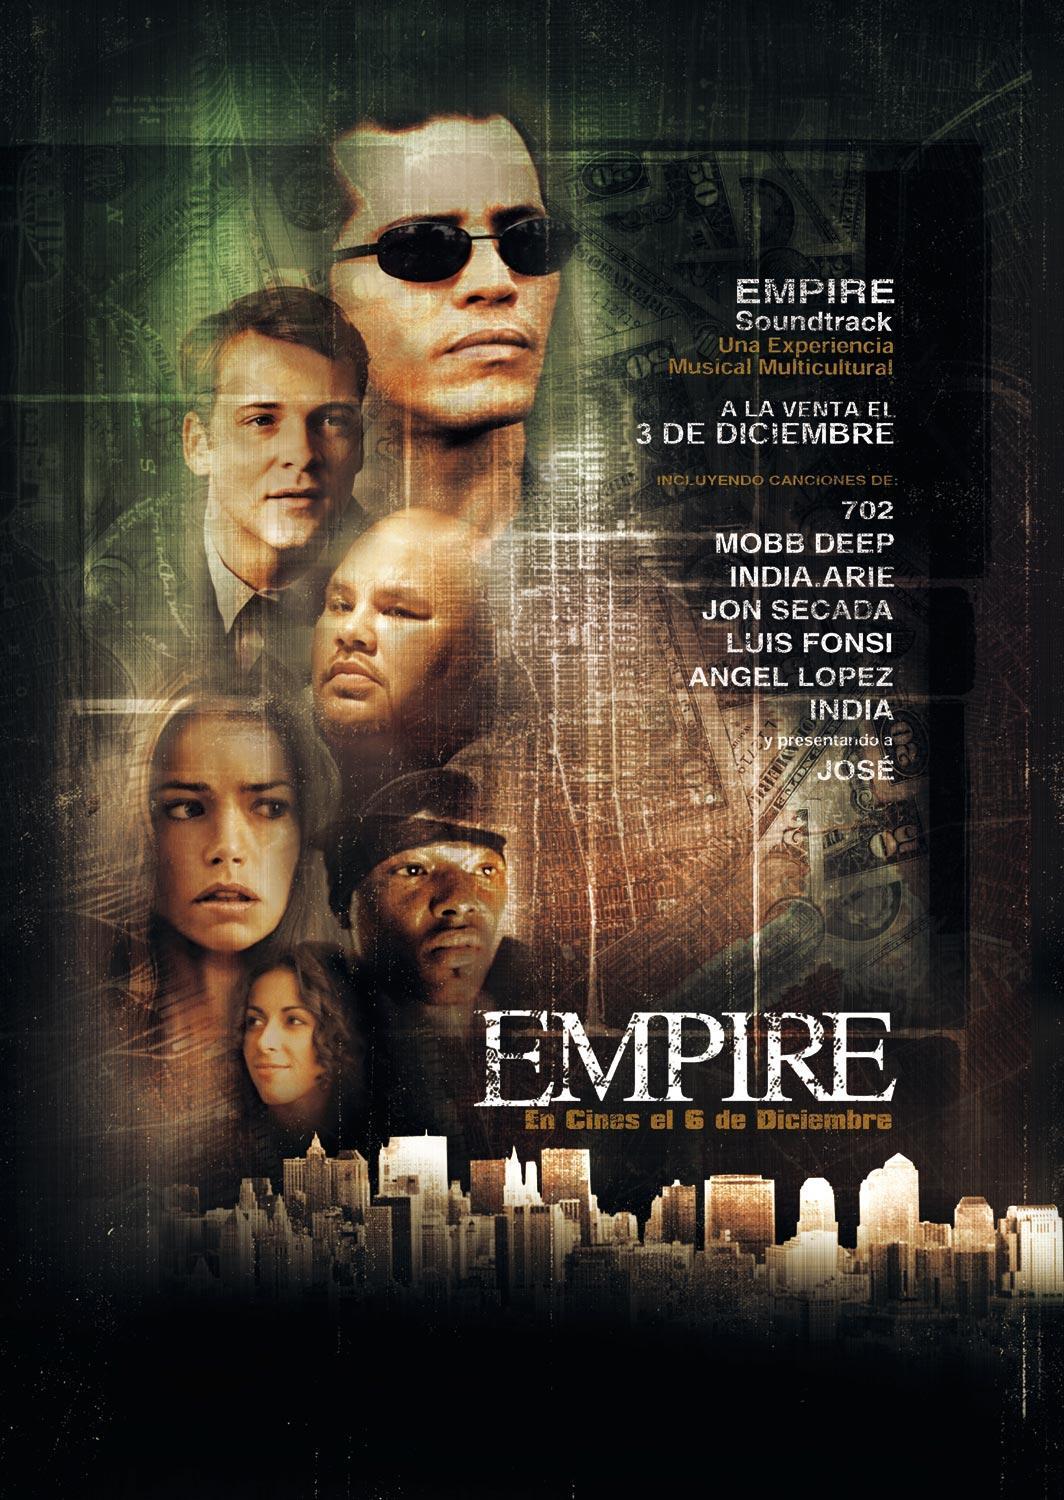 The new empire movie. Империя (Empire) 2002. Постер фильму 2002 года. Империя постеры.